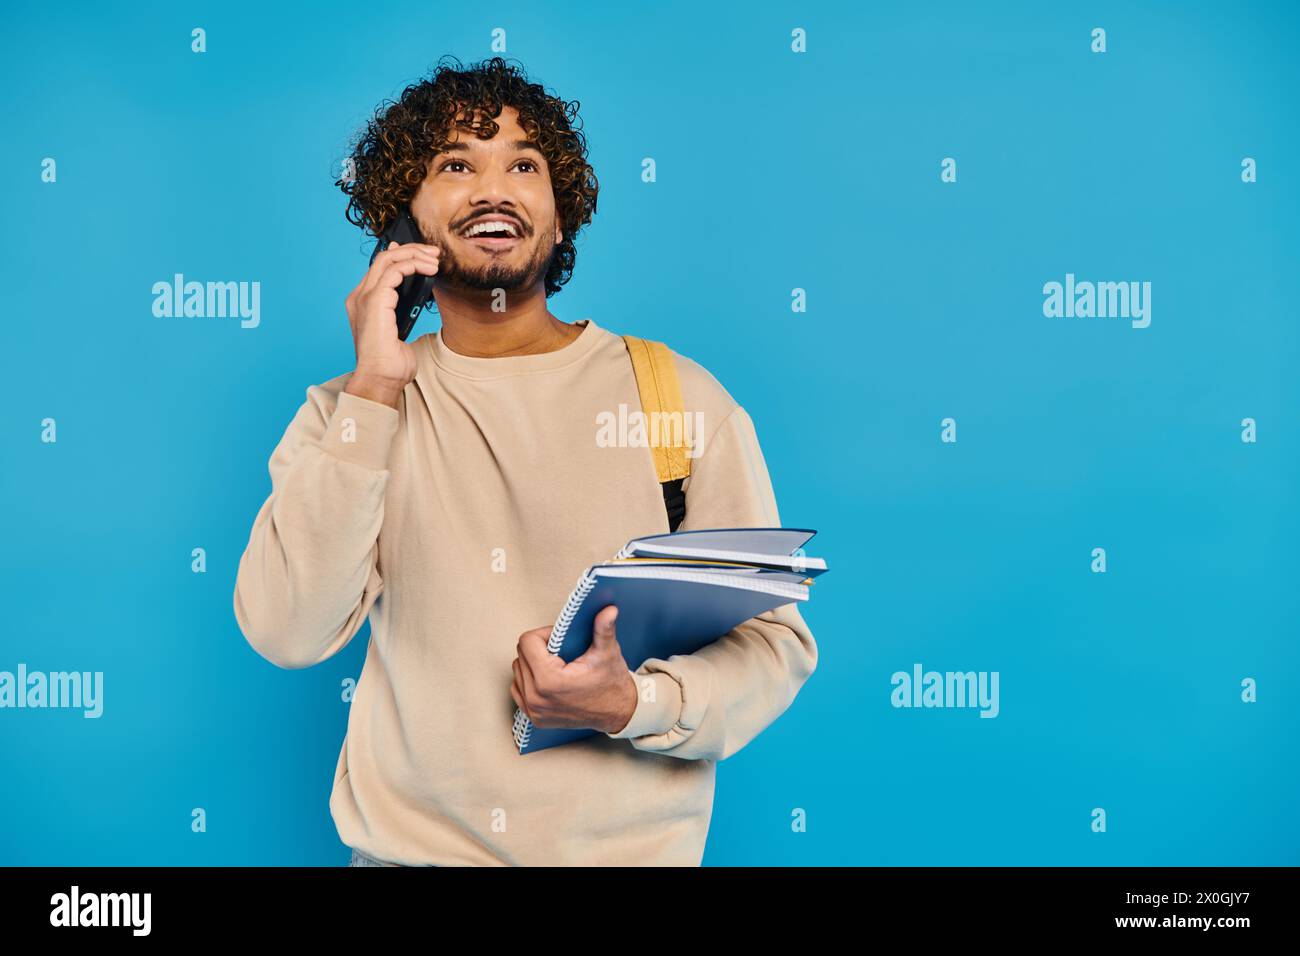 Ein indischer Student in lässiger Kleidung steht vor blauem Hintergrund, hält eine Mappe und spricht mit einem Handy. Stockfoto